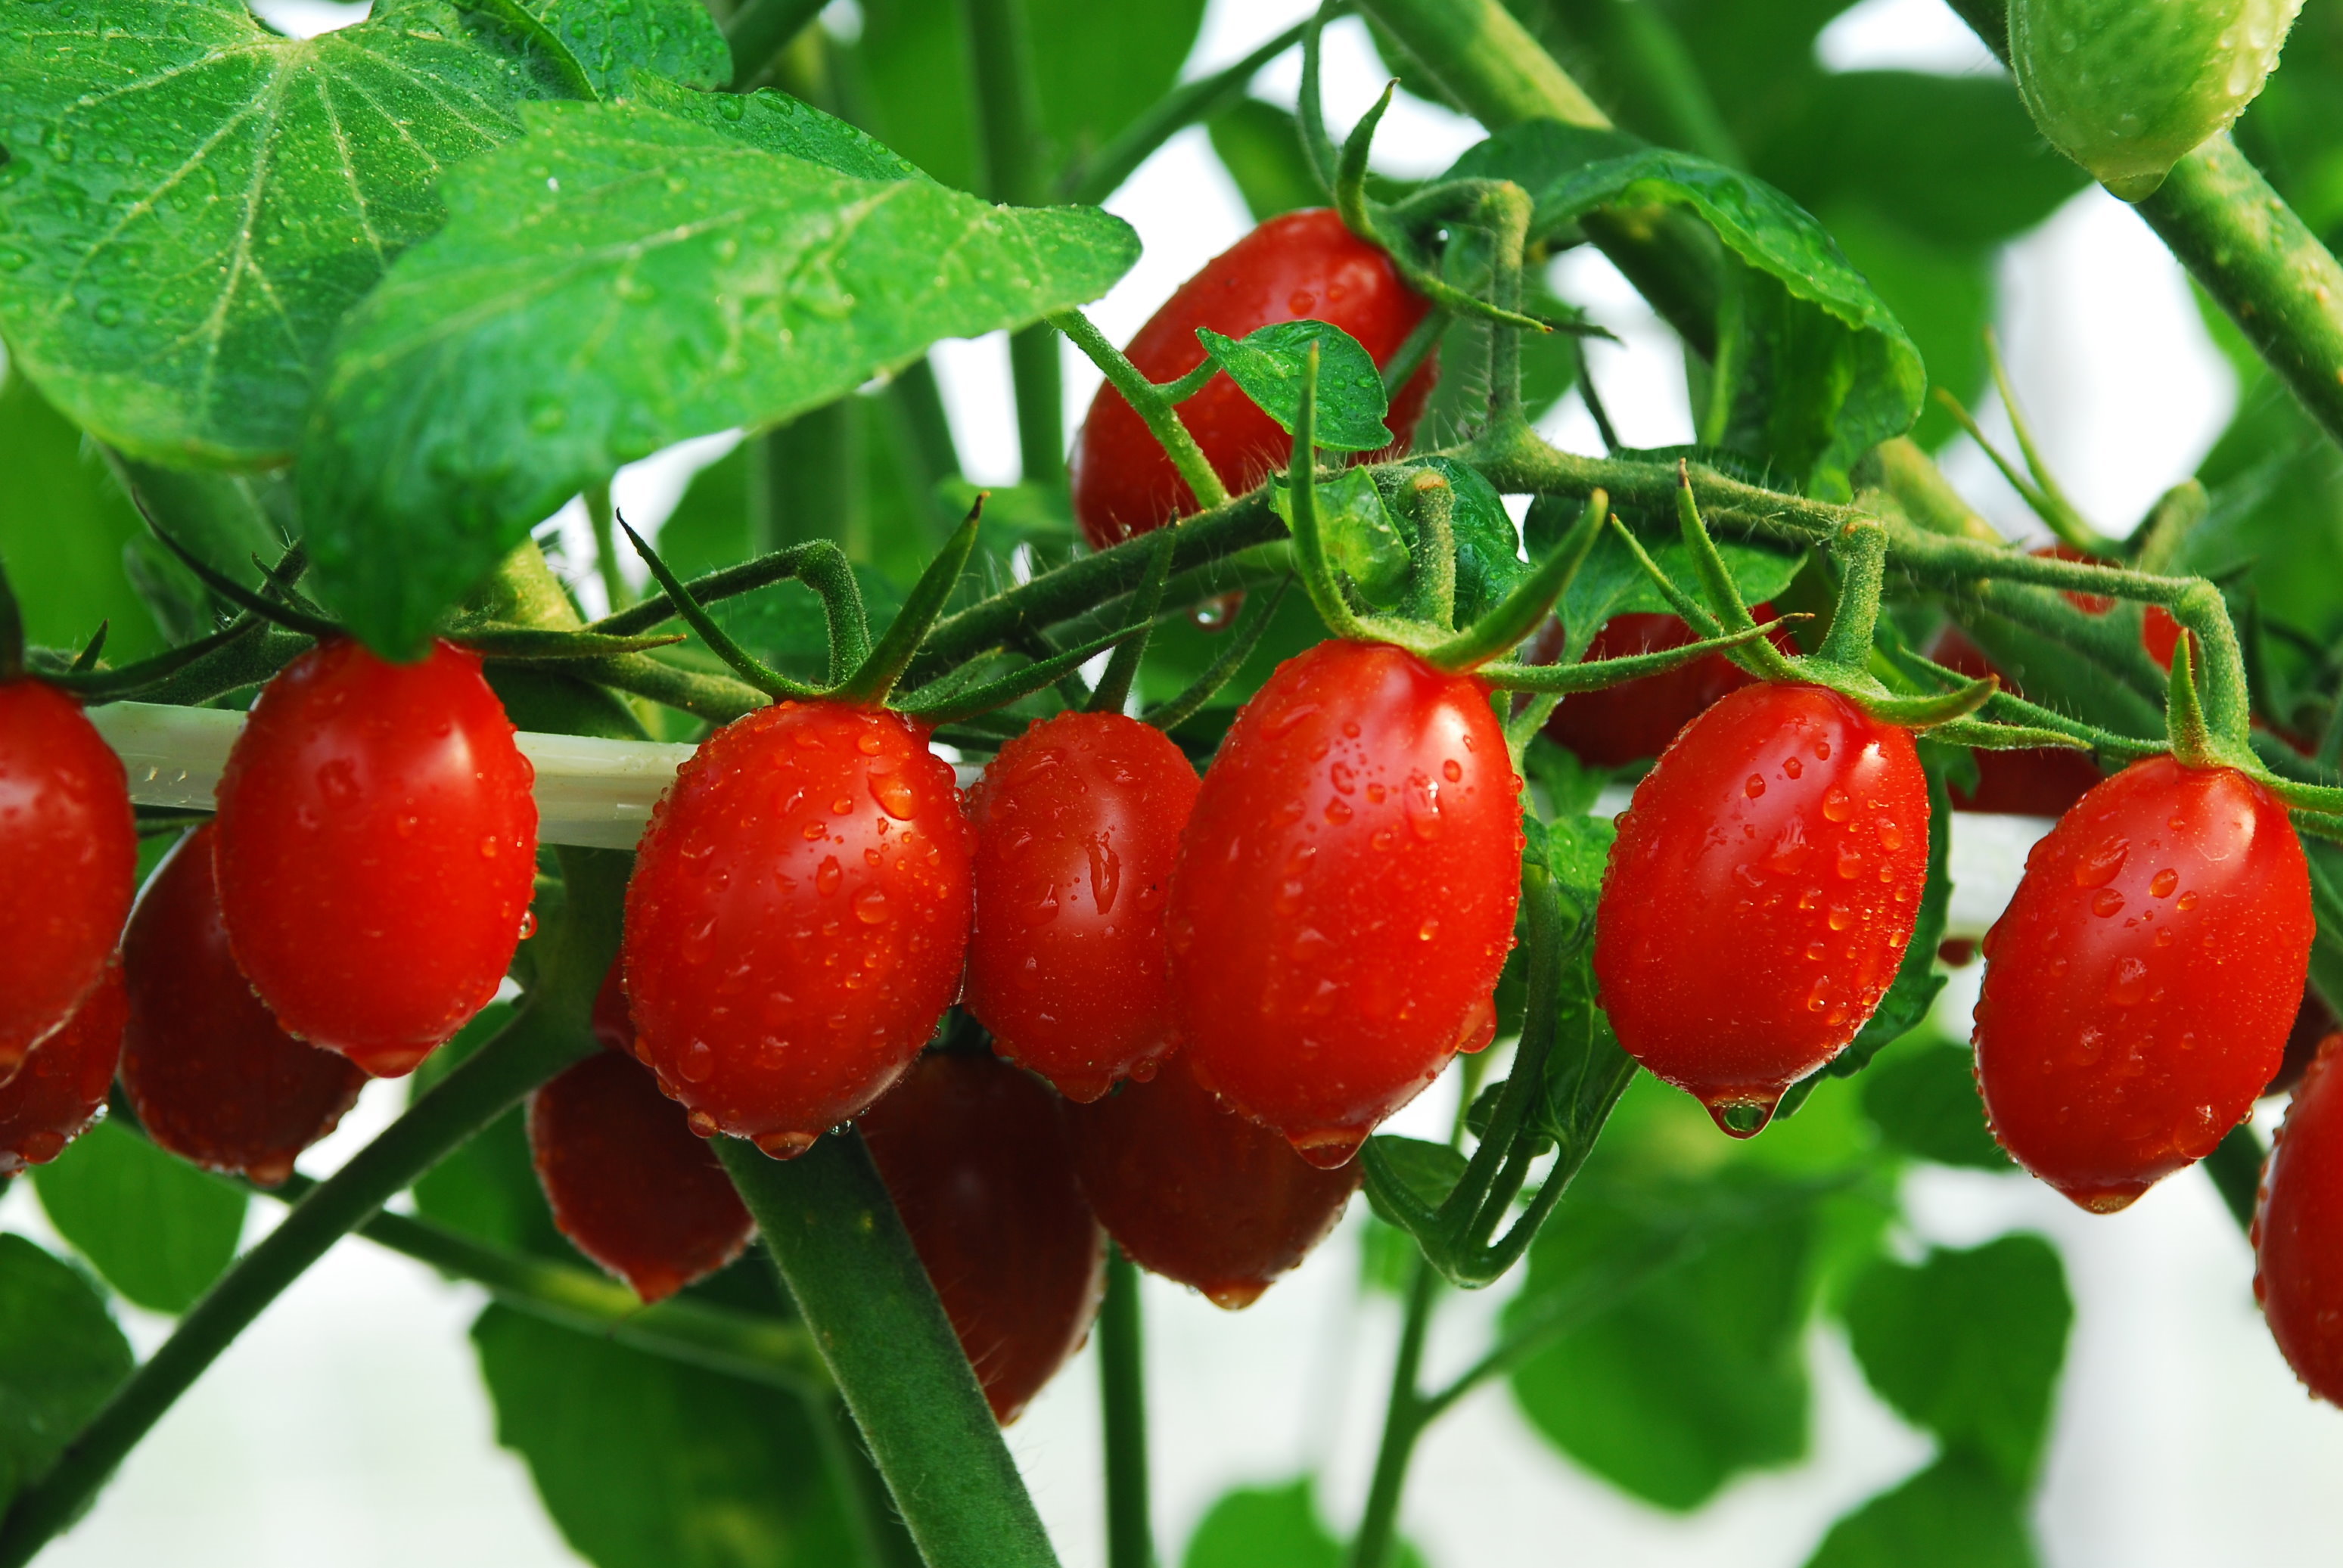 臺灣消費者偏愛聖女型小果番茄,即果實長橢圓形,果色鮮紅的小果番茄類型,當做水果食用好方便